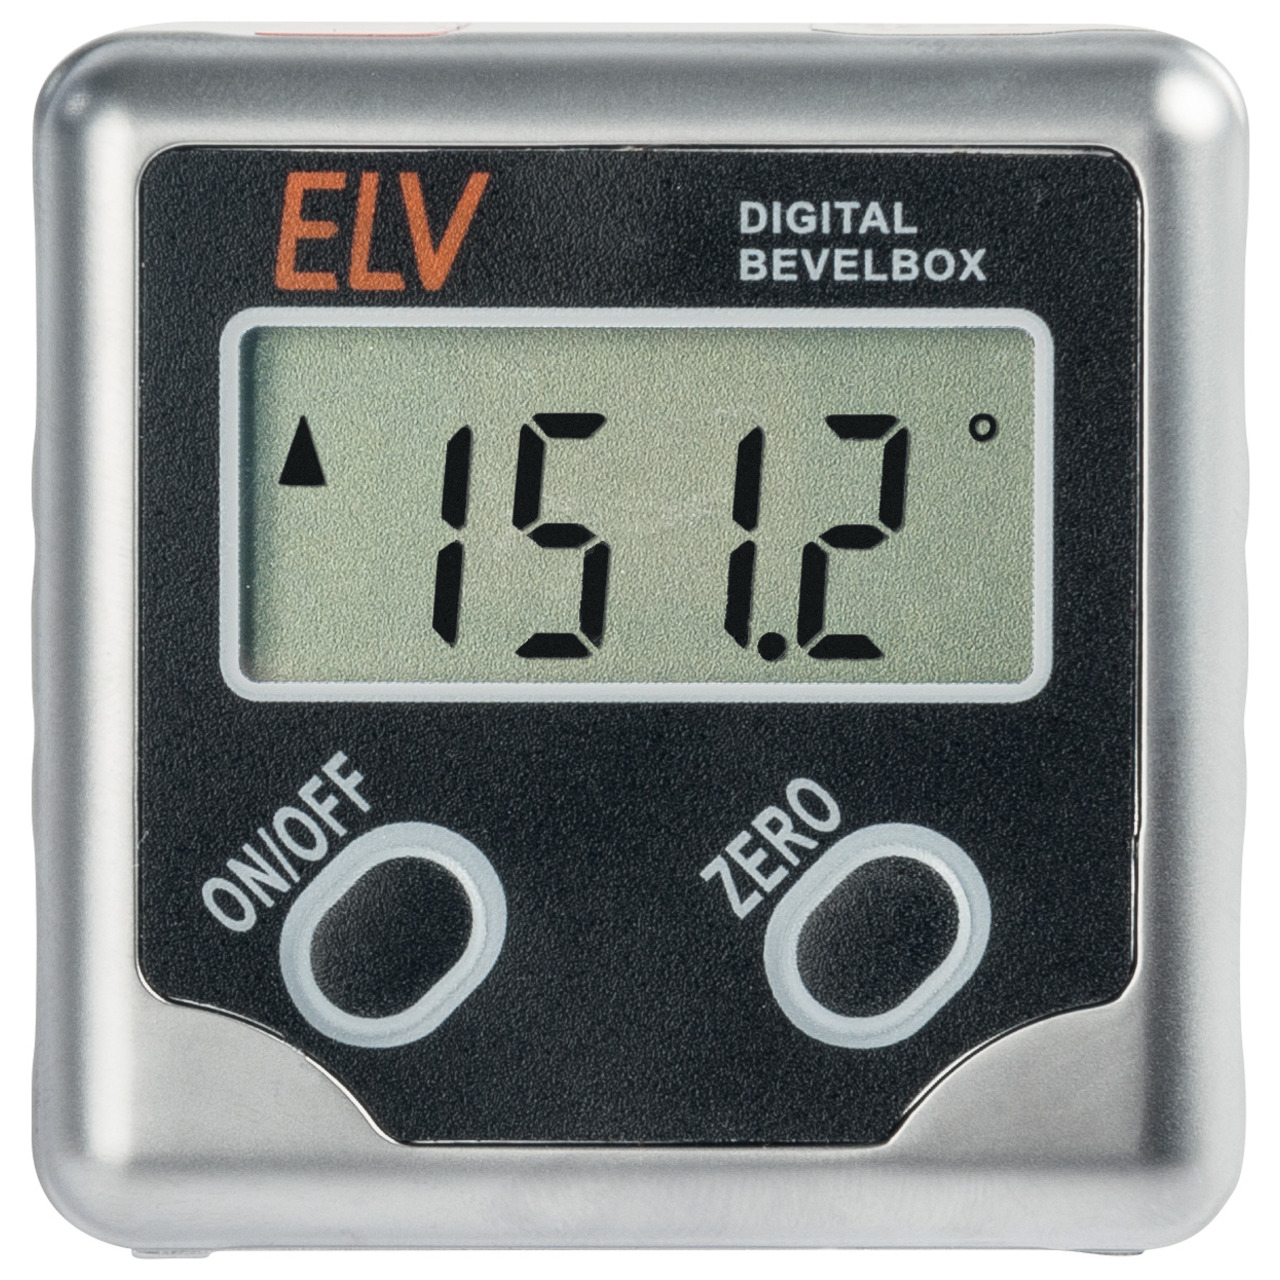 ELV Bevel-Box 360- Neigungssensor- digitale Wasserwaage